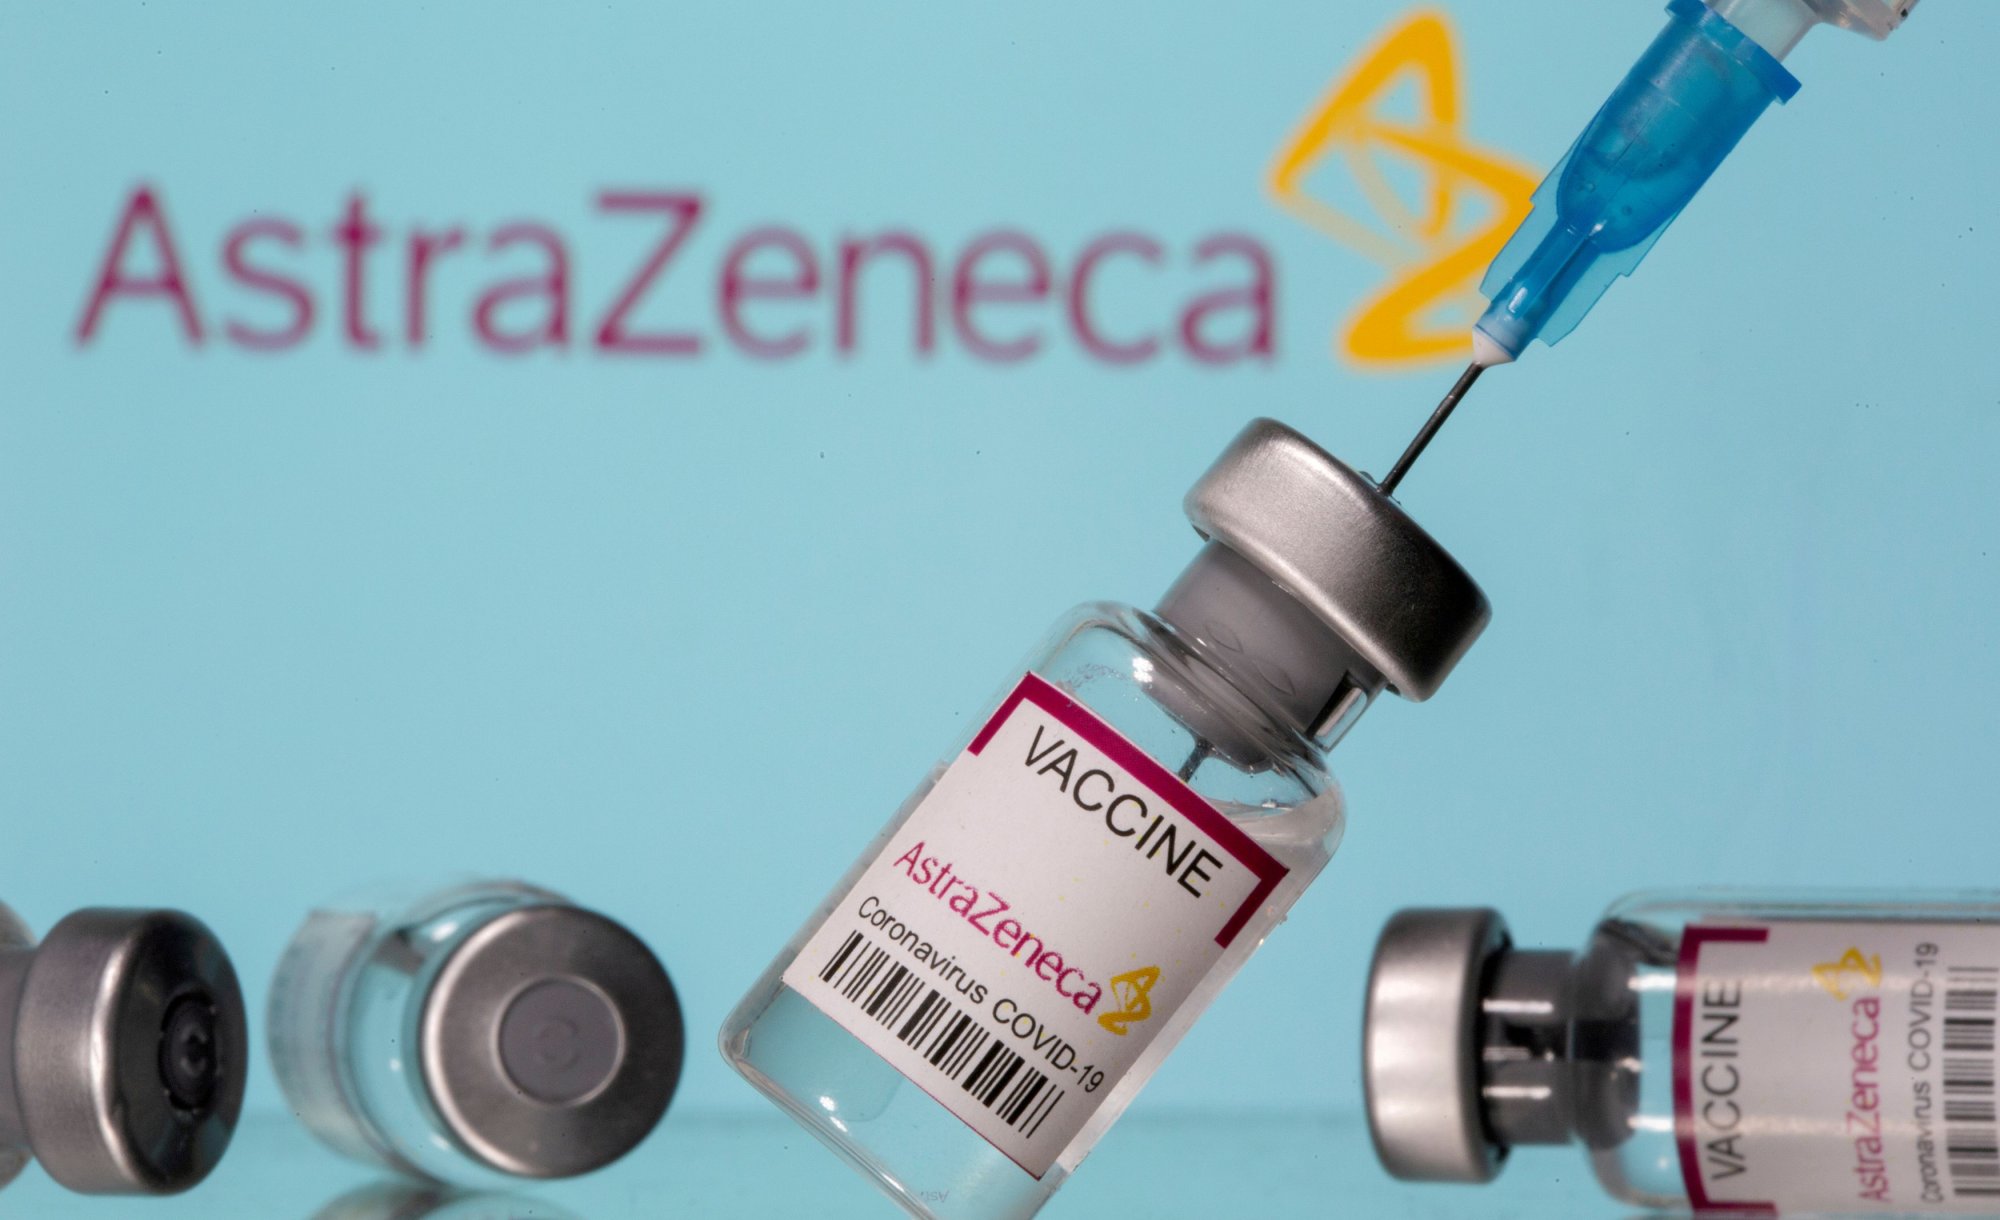 Η AstraZeneca αποσύρει το εμβόλιο για τον κορονοϊό - Ποιος είναι ο λόγος